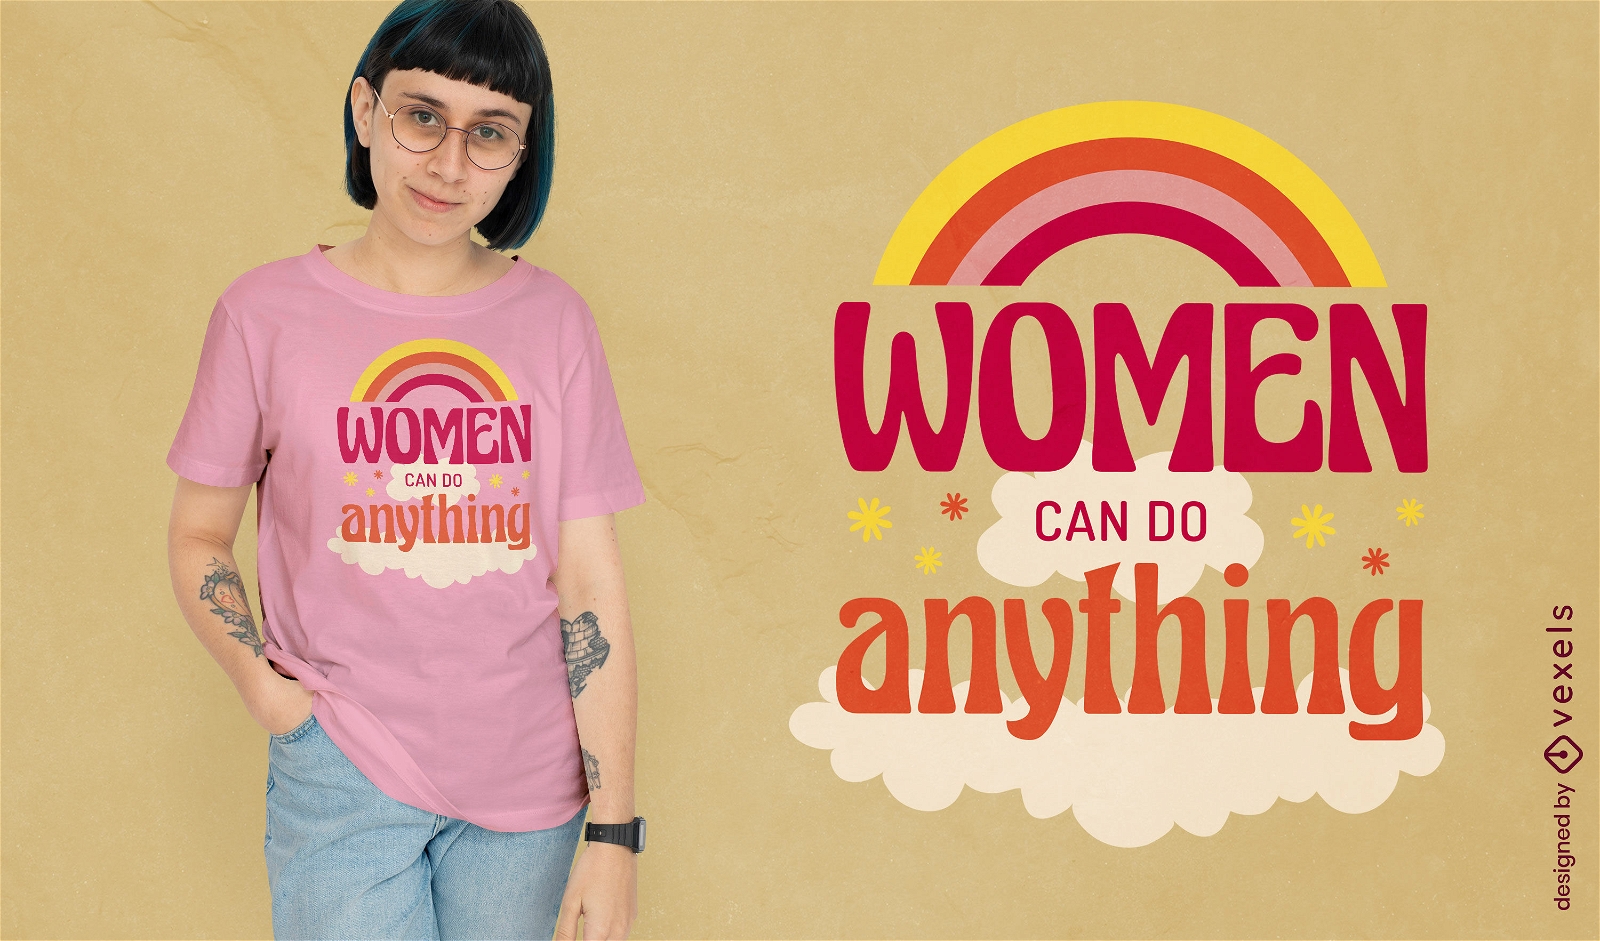 As mulheres podem fazer qualquer coisa design de camiseta com cita??o feminista